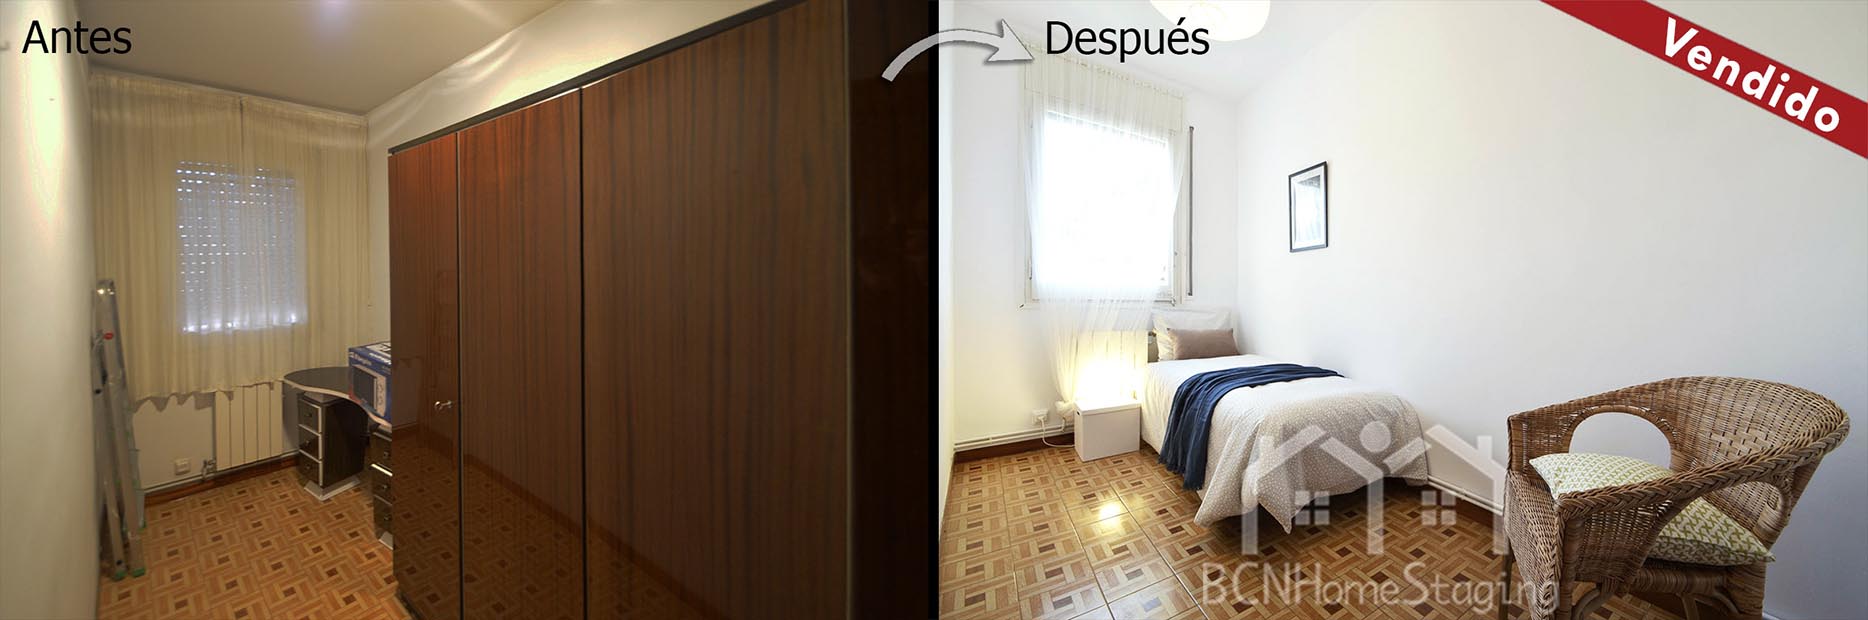 home-staging-barcelona-dormitorio-antes-despues